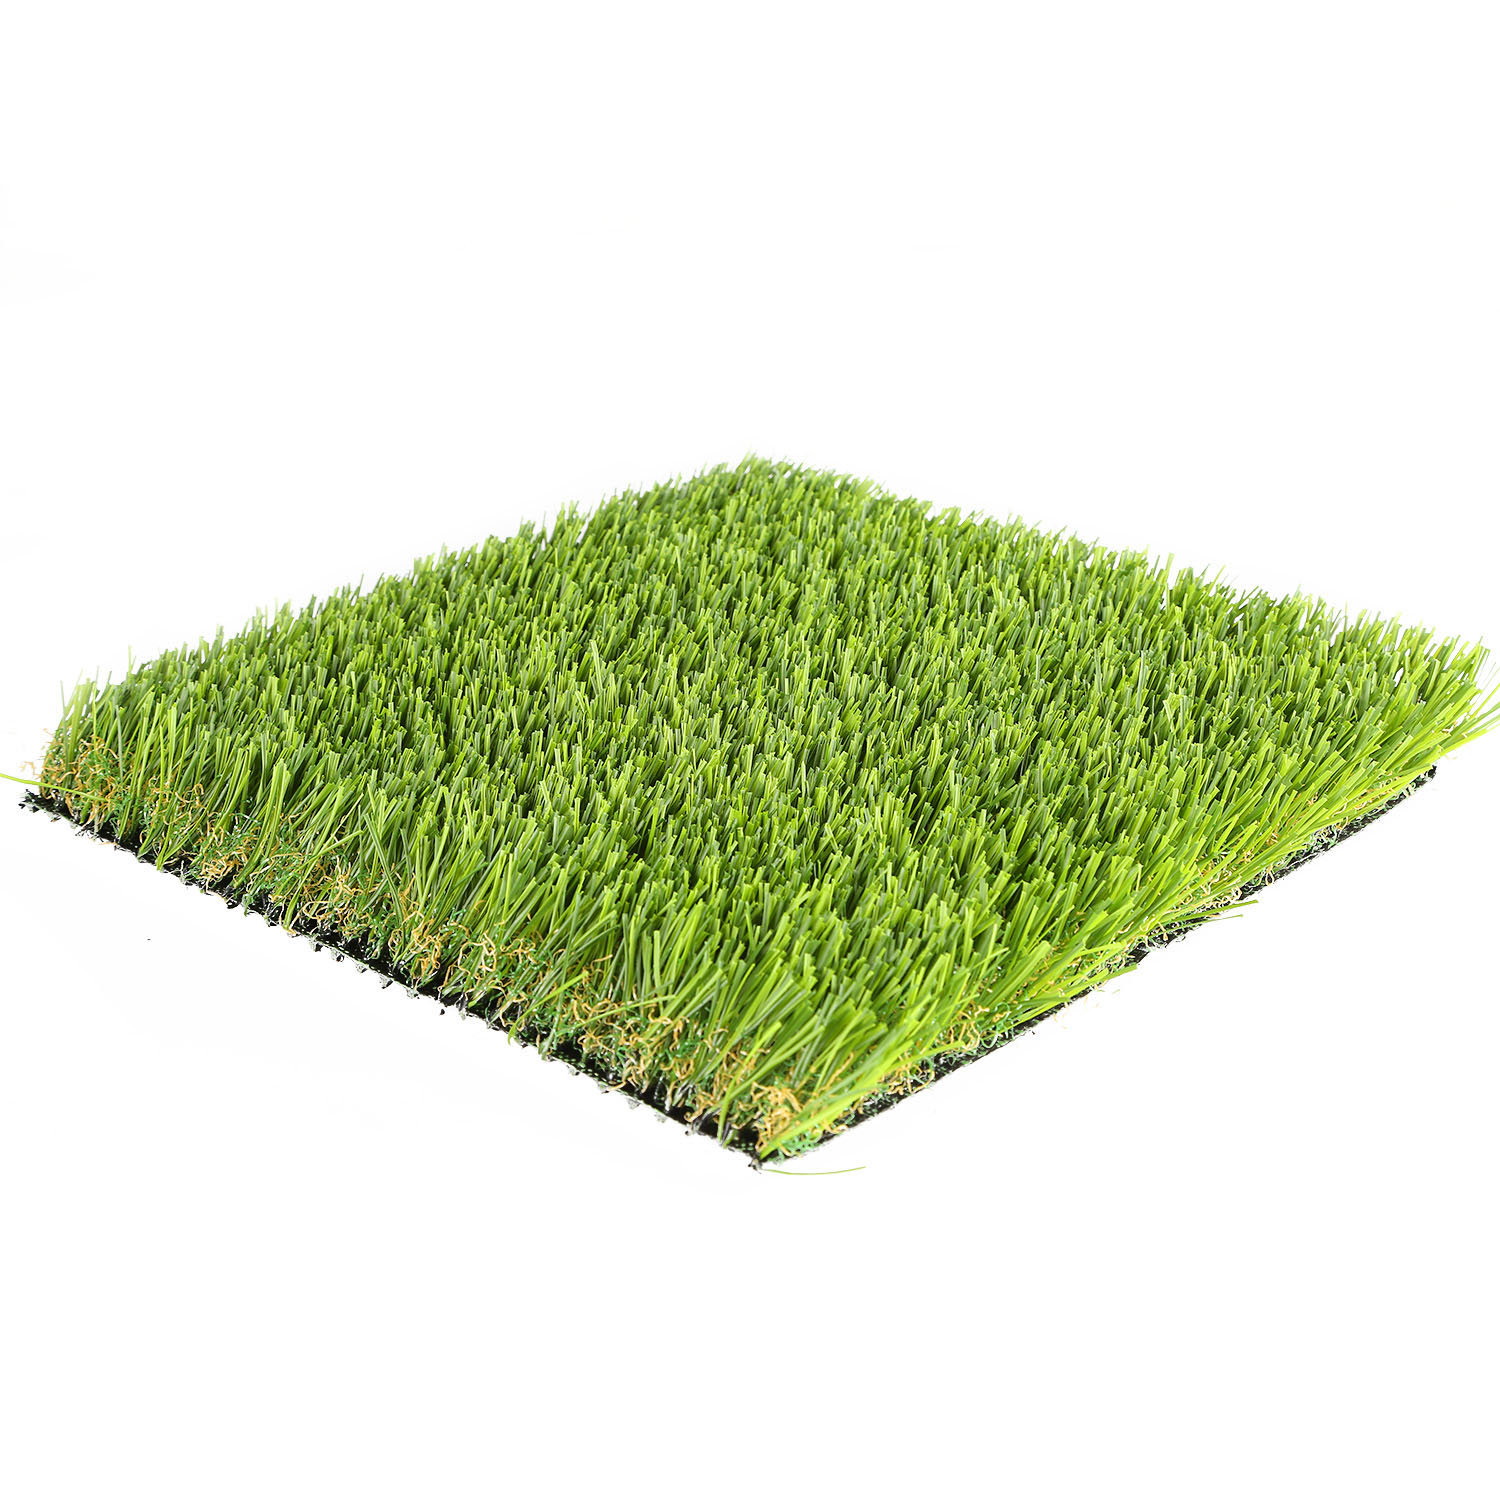 Landscaping grass mat plastic floor mats for home garden Featured Image